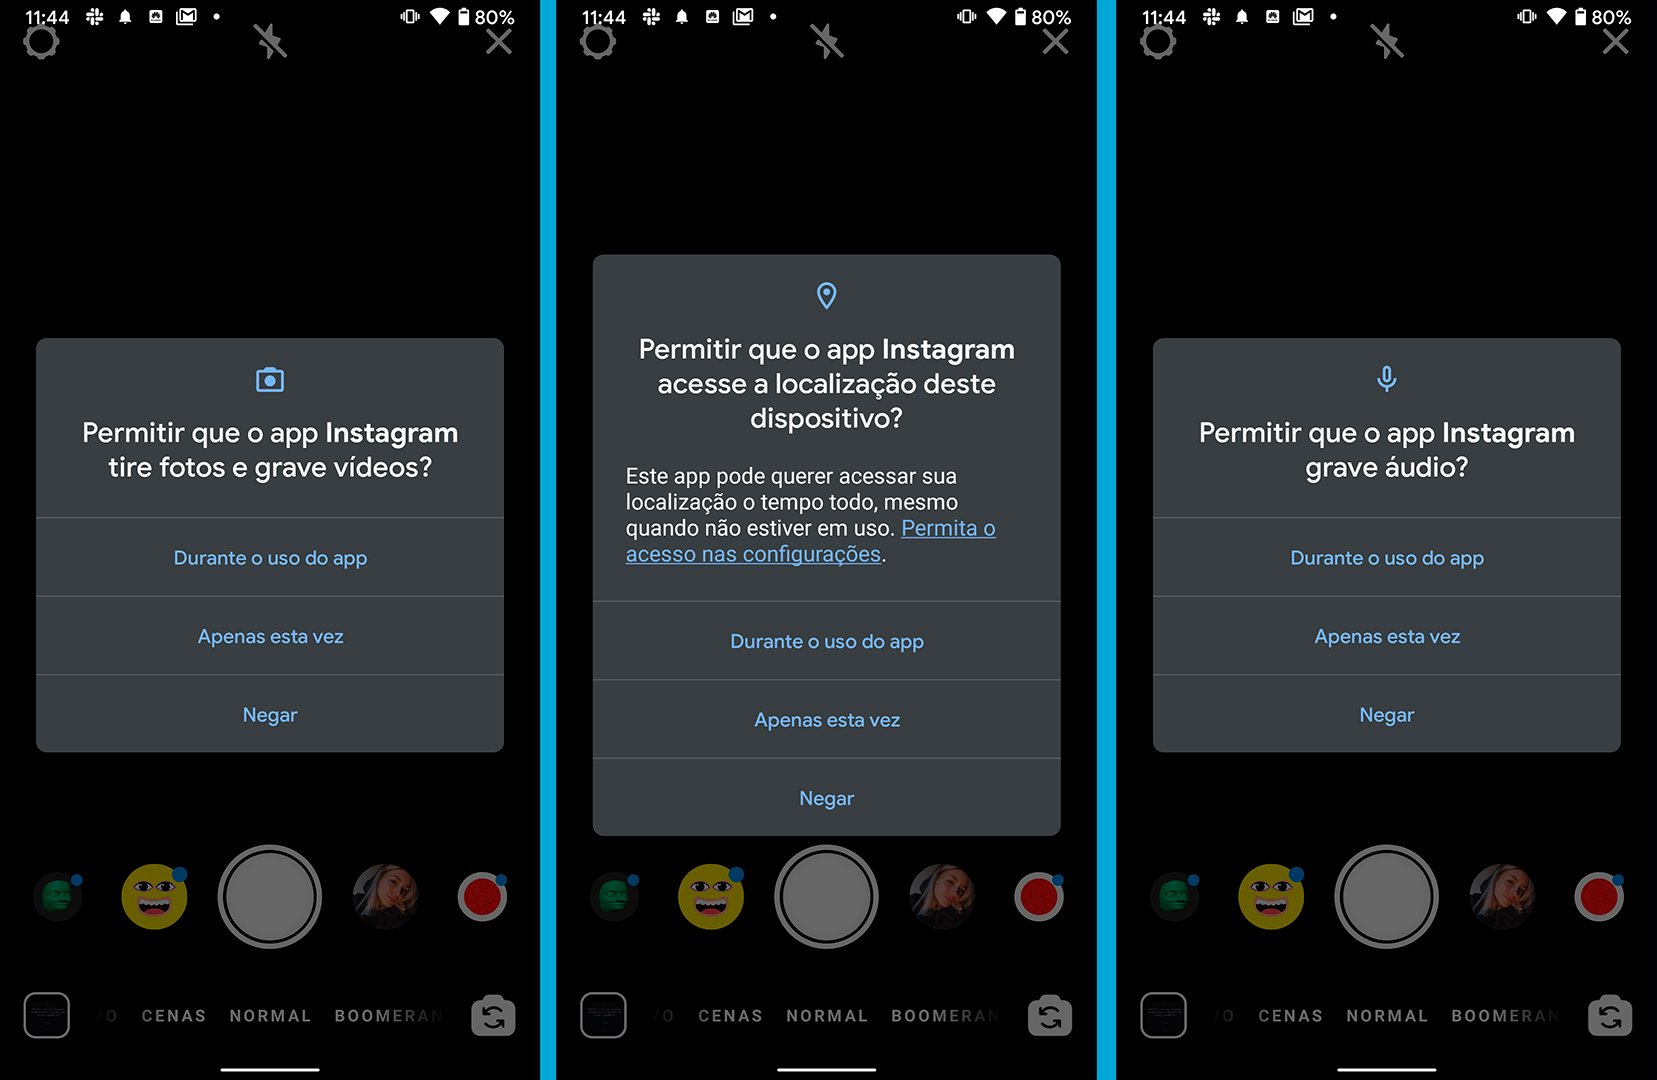 Novo Android 11 traz novas permissões de uso de componentes para aplicativos.